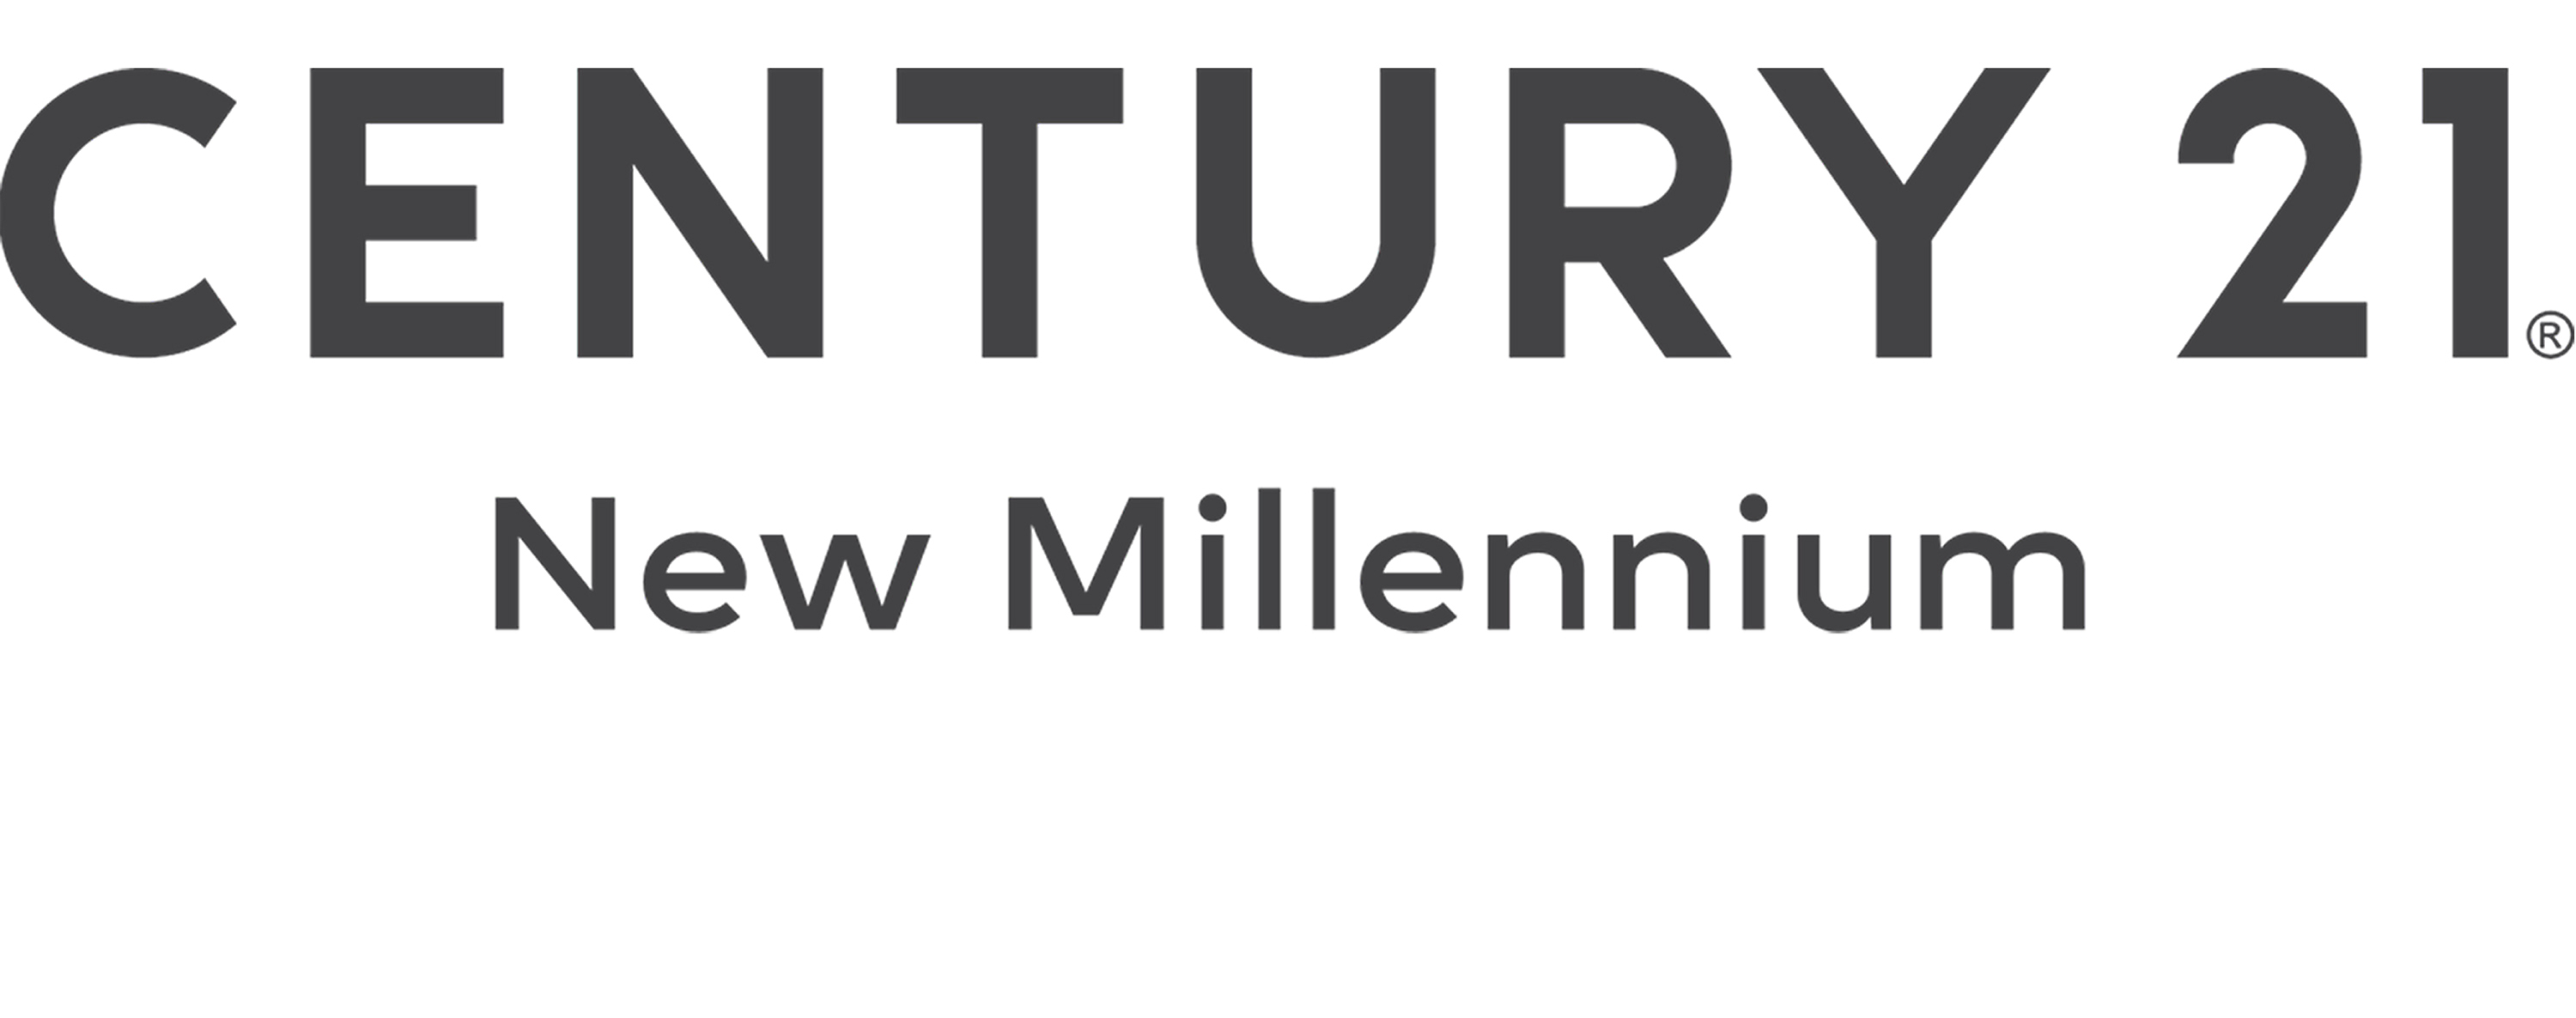 Century 21 New Millennium 